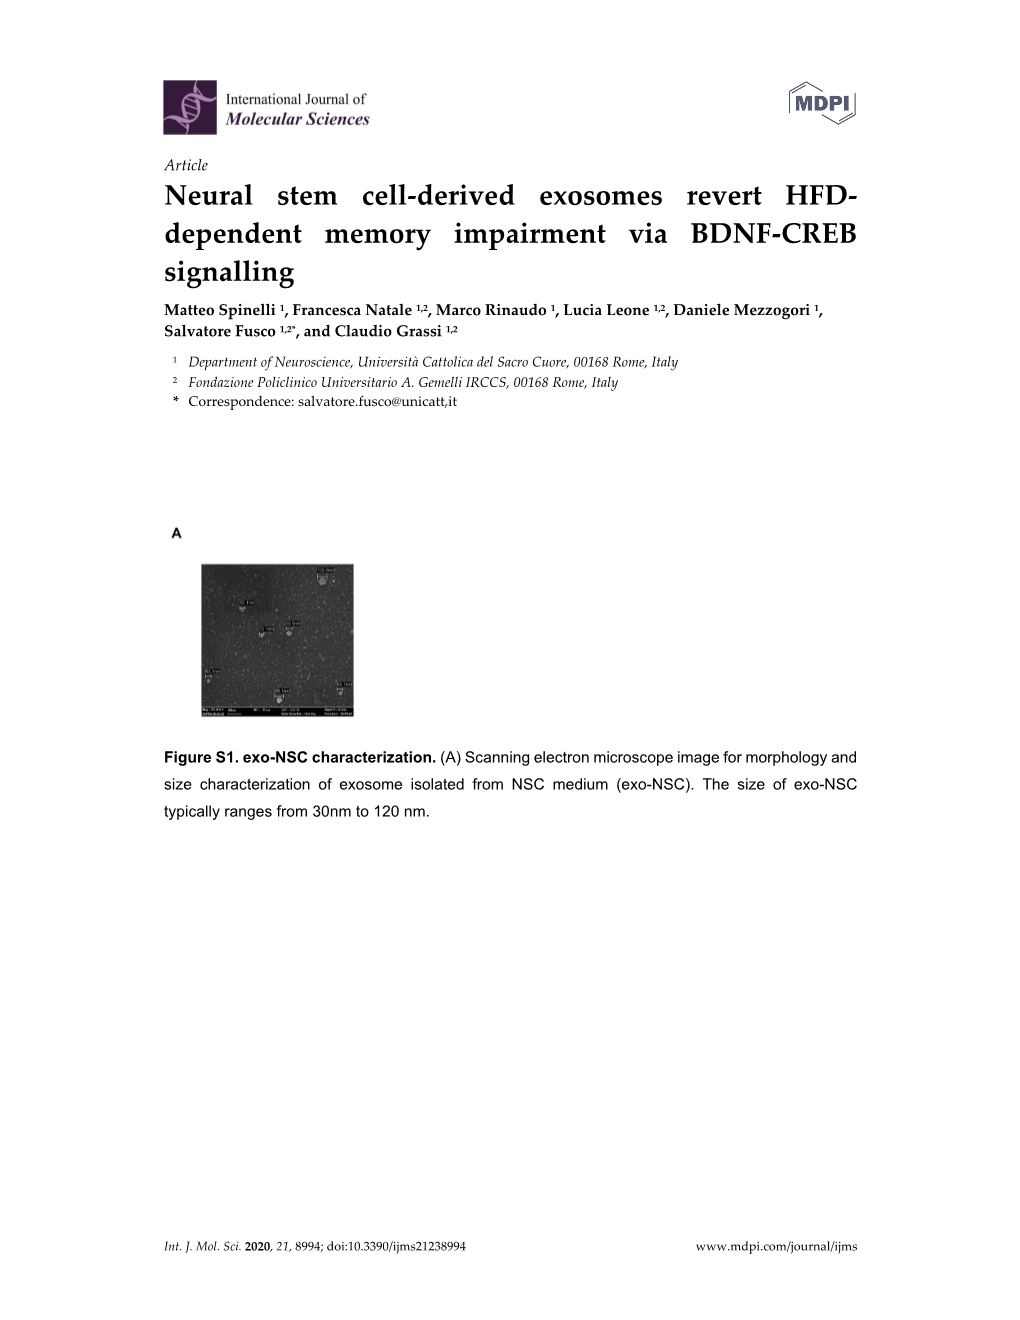 Neural Stem Cell-Derived Exosomes Revert